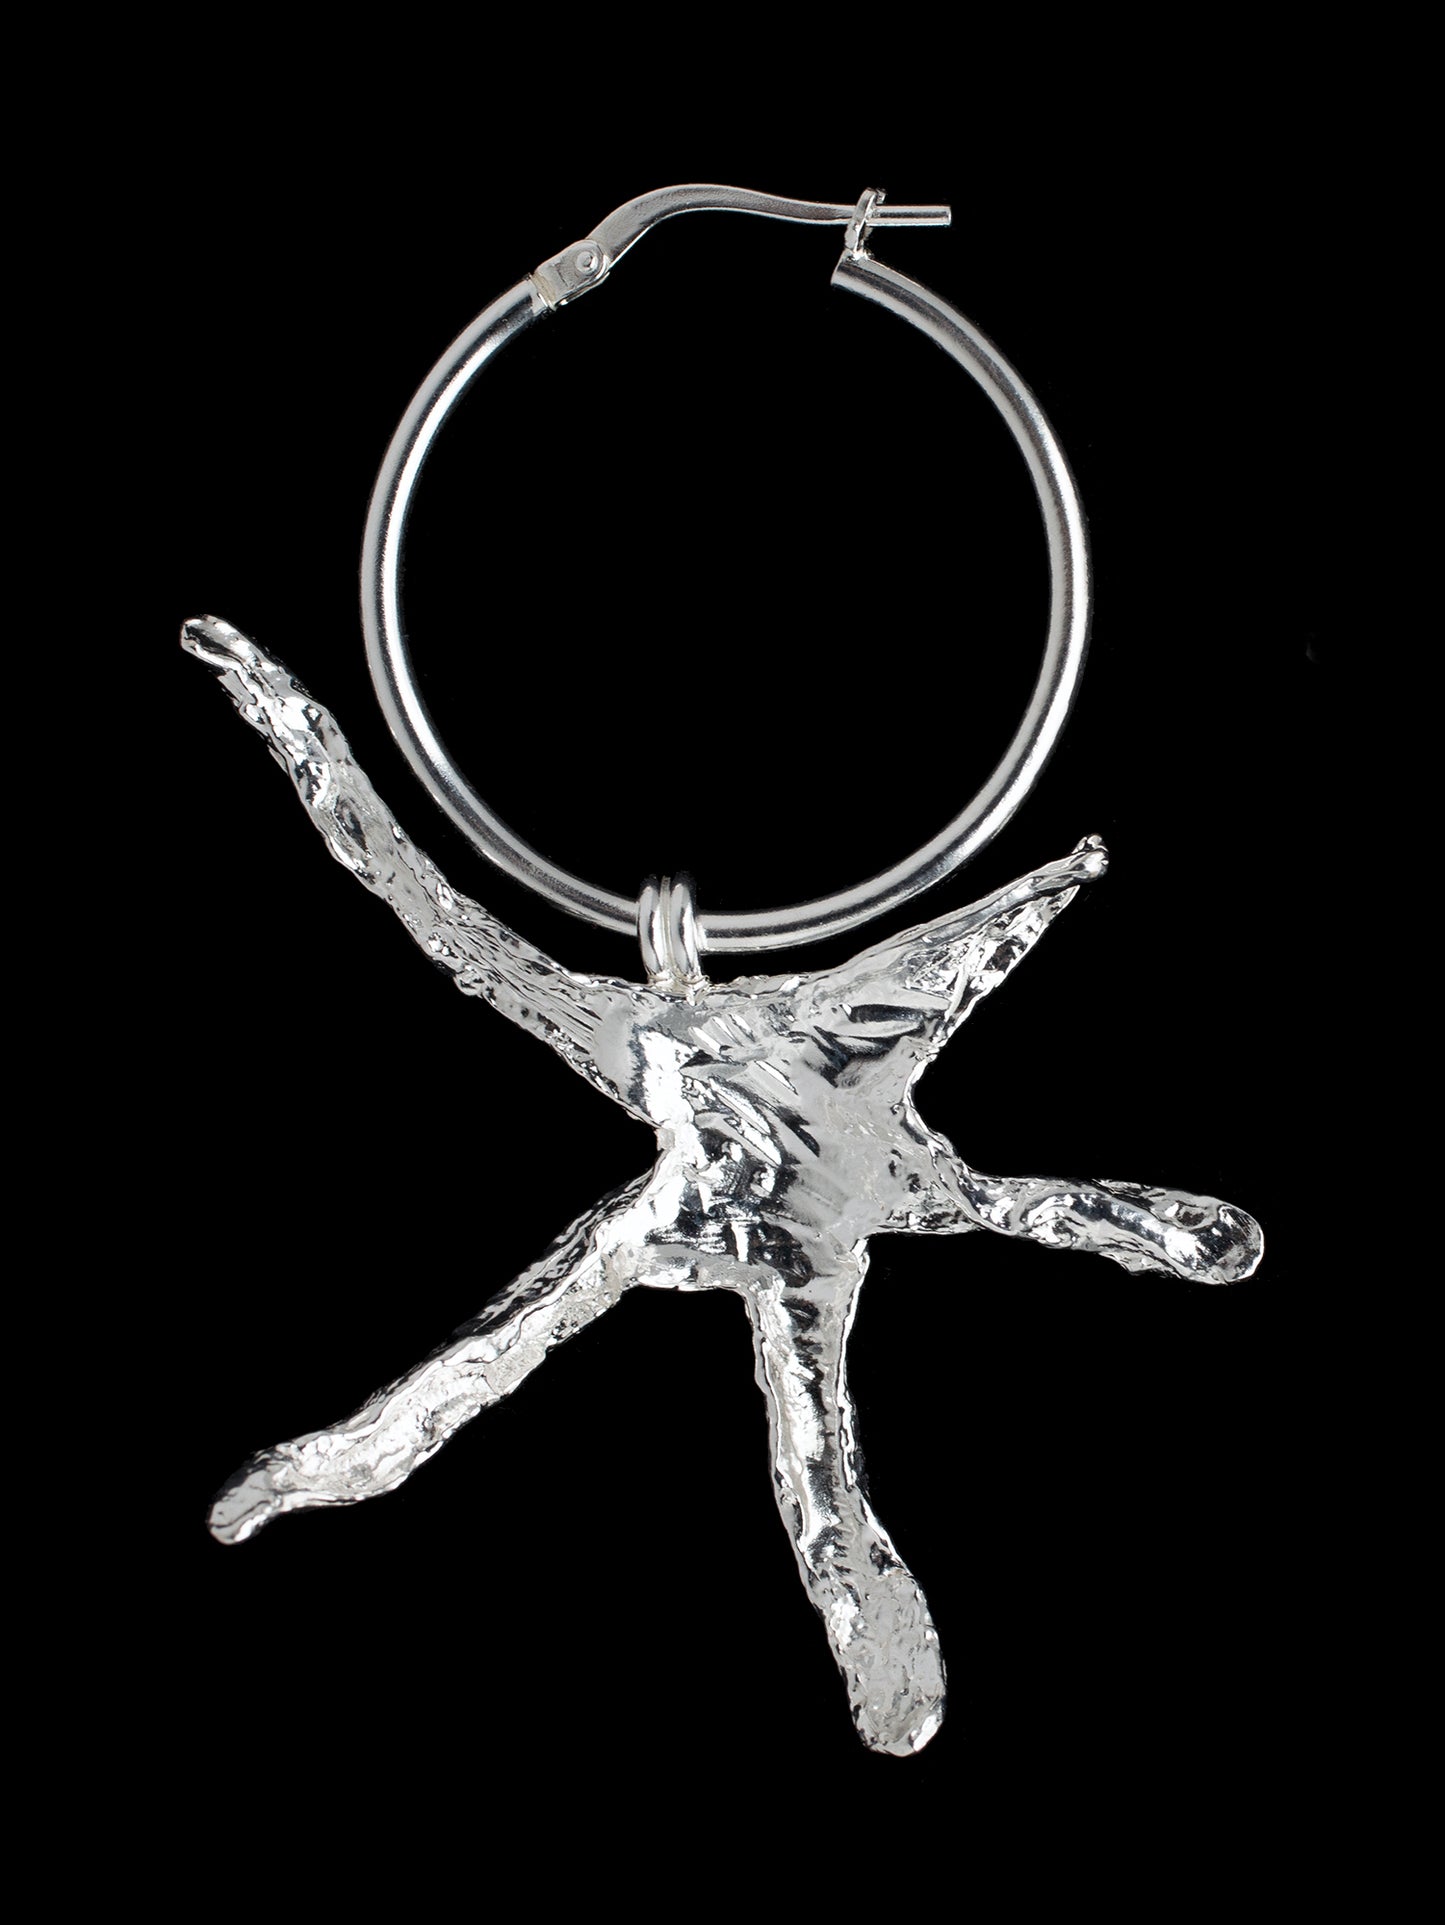 Large organic star shaped hoop earrings handmade in silver